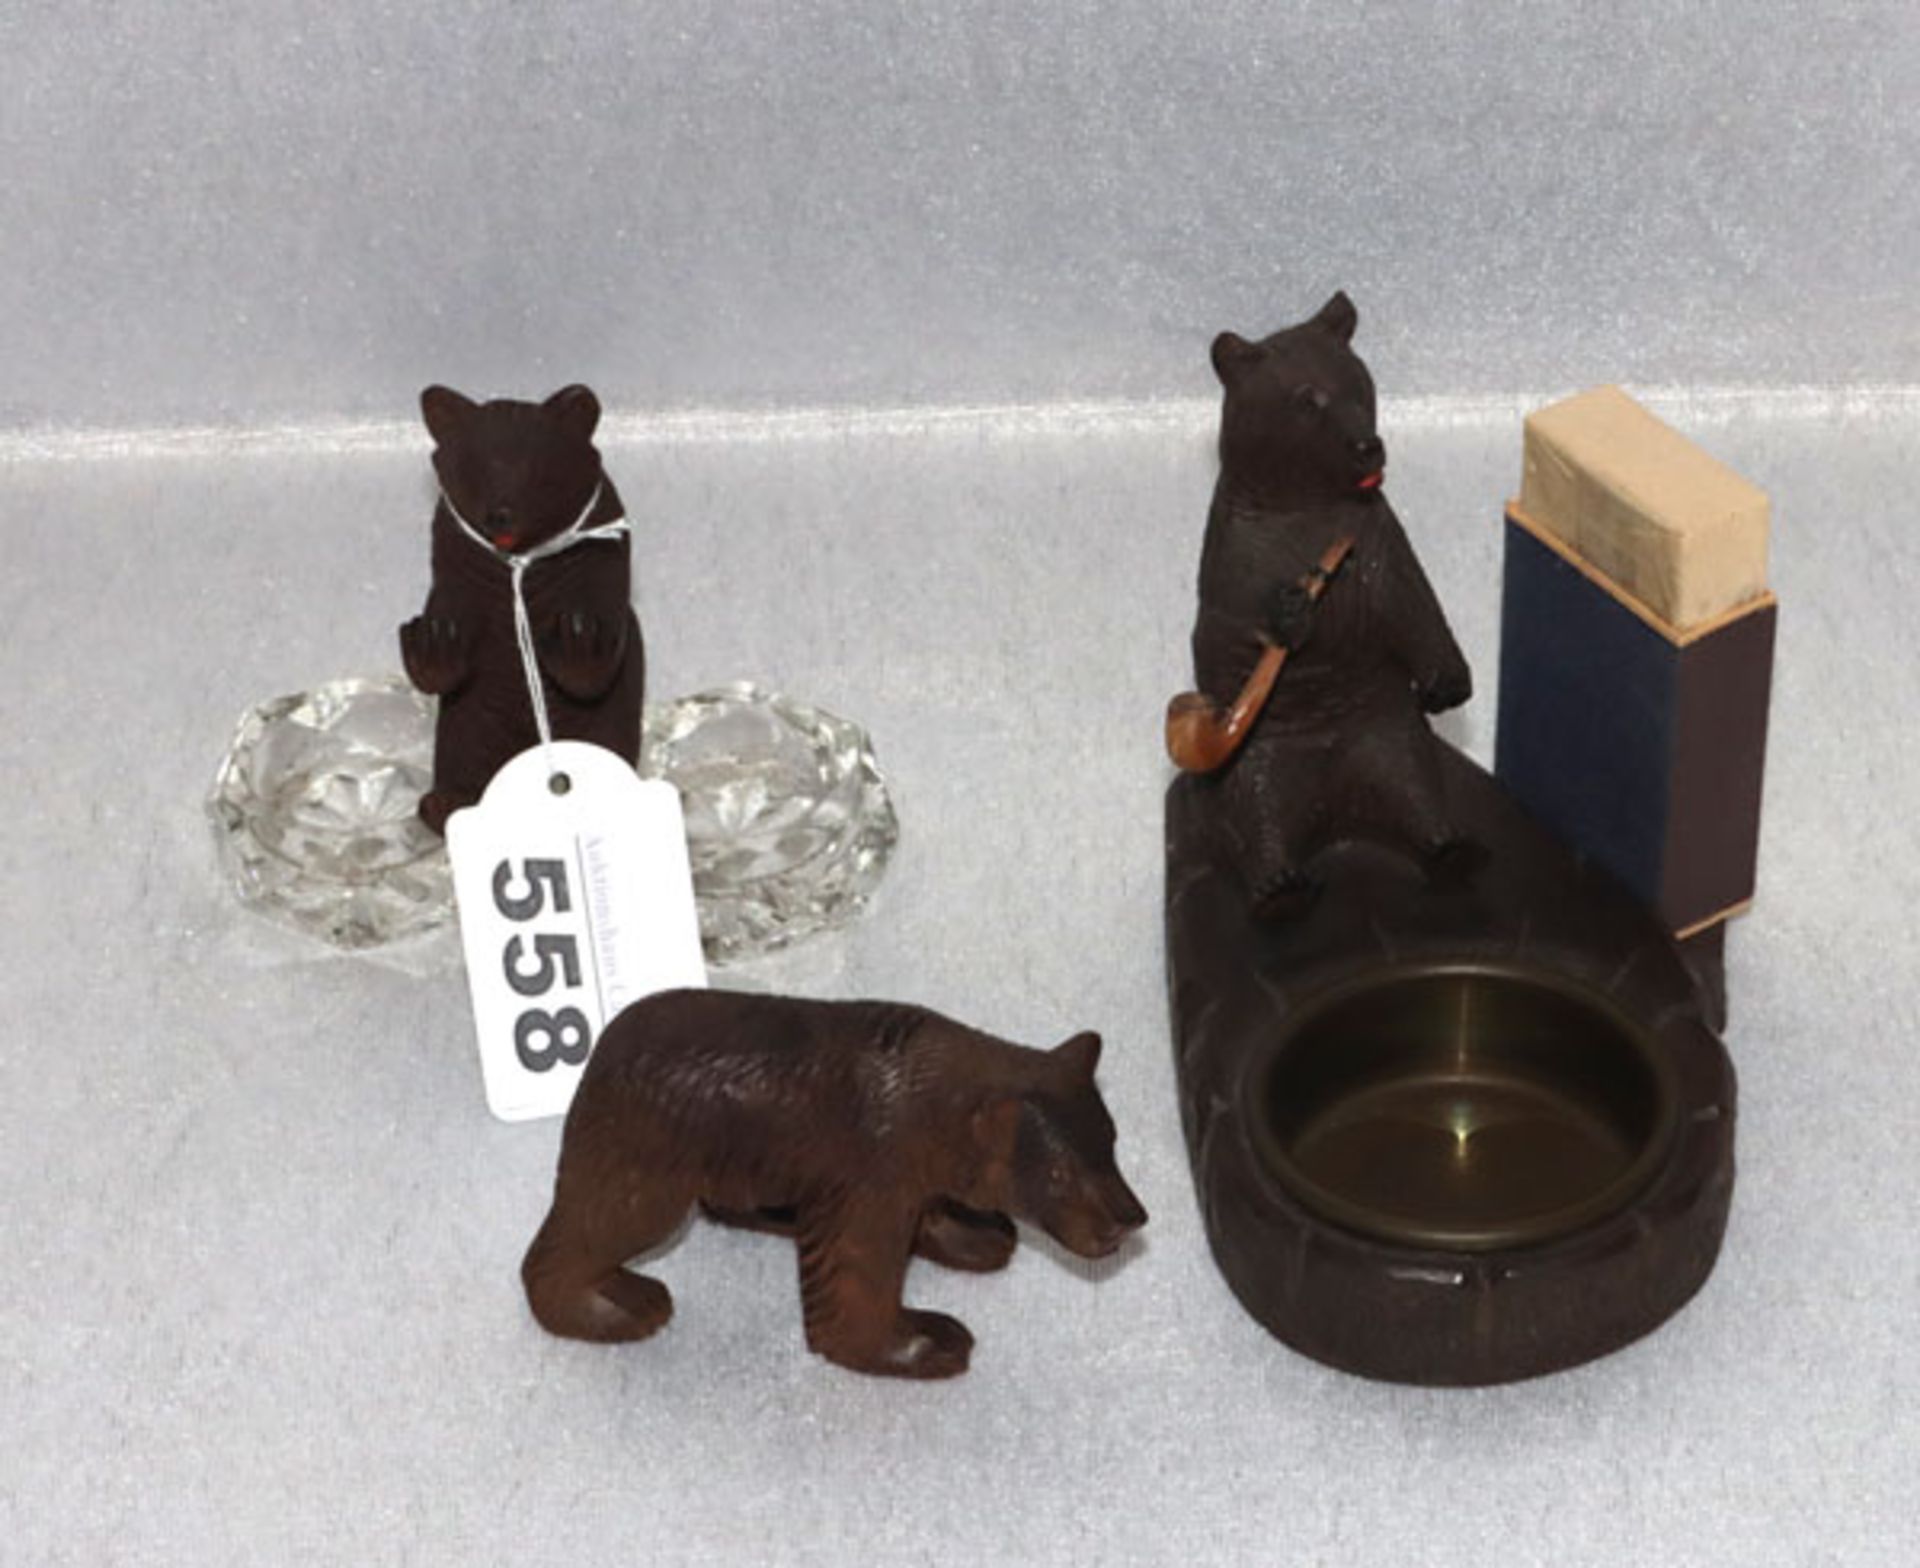 Holz Figurengruppe 'Bären', Aschenbecher mit rauchendem Bär, Salzgefäß mit sitzendem Bär, und